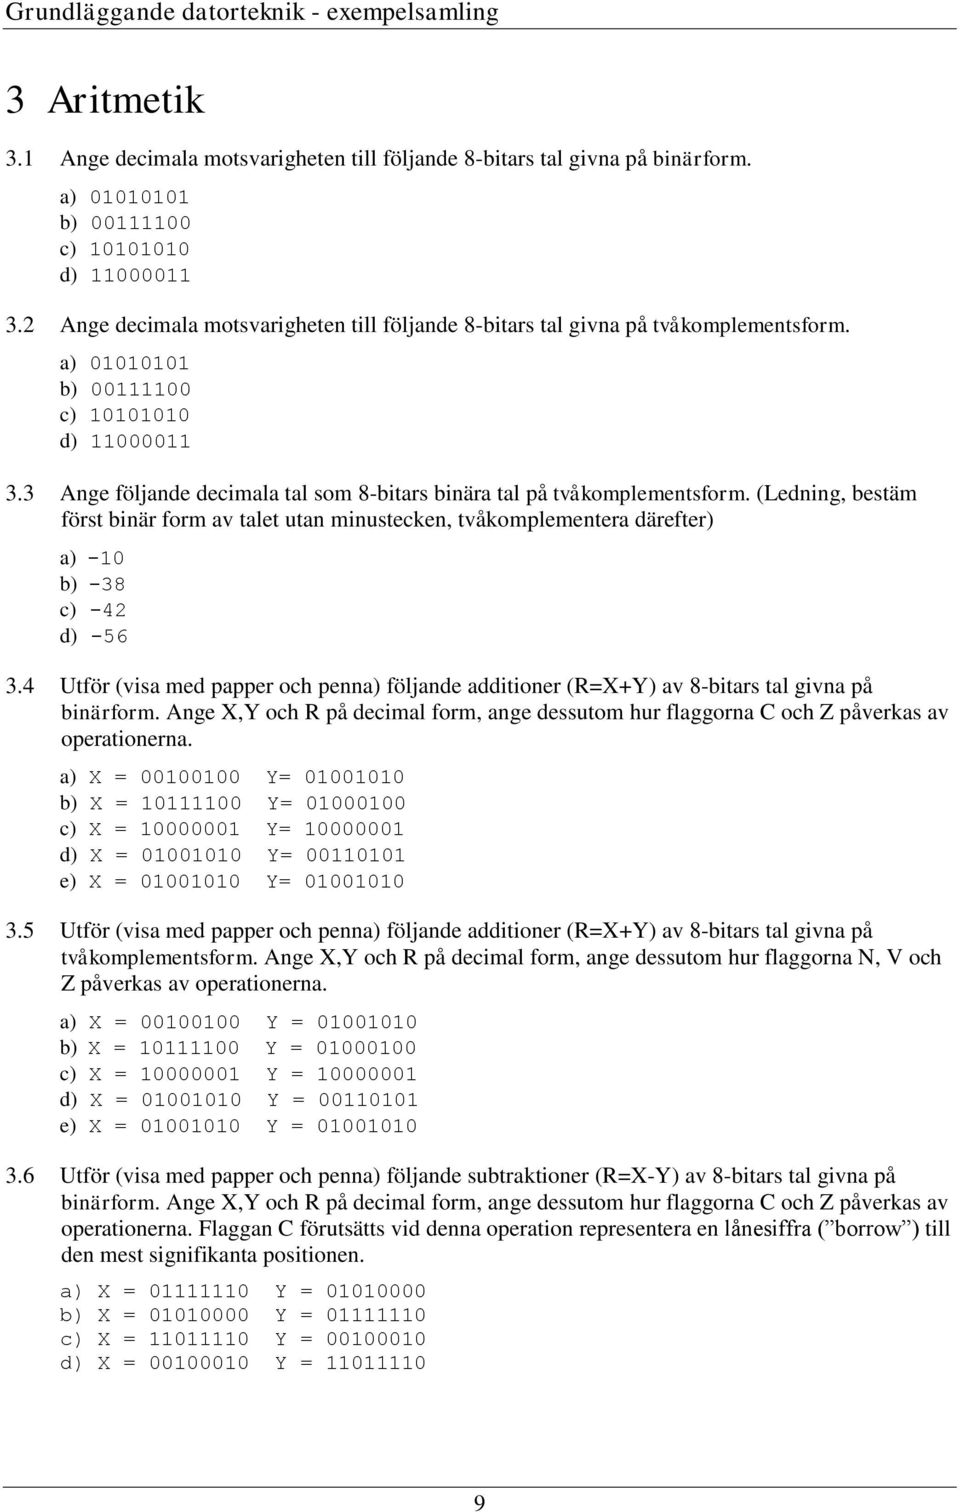 (Ledning, bestäm först binär form av talet utan minustecken, tvåkomplementera därefter) a) -0 b) -38 c) -42 d) -56 3.